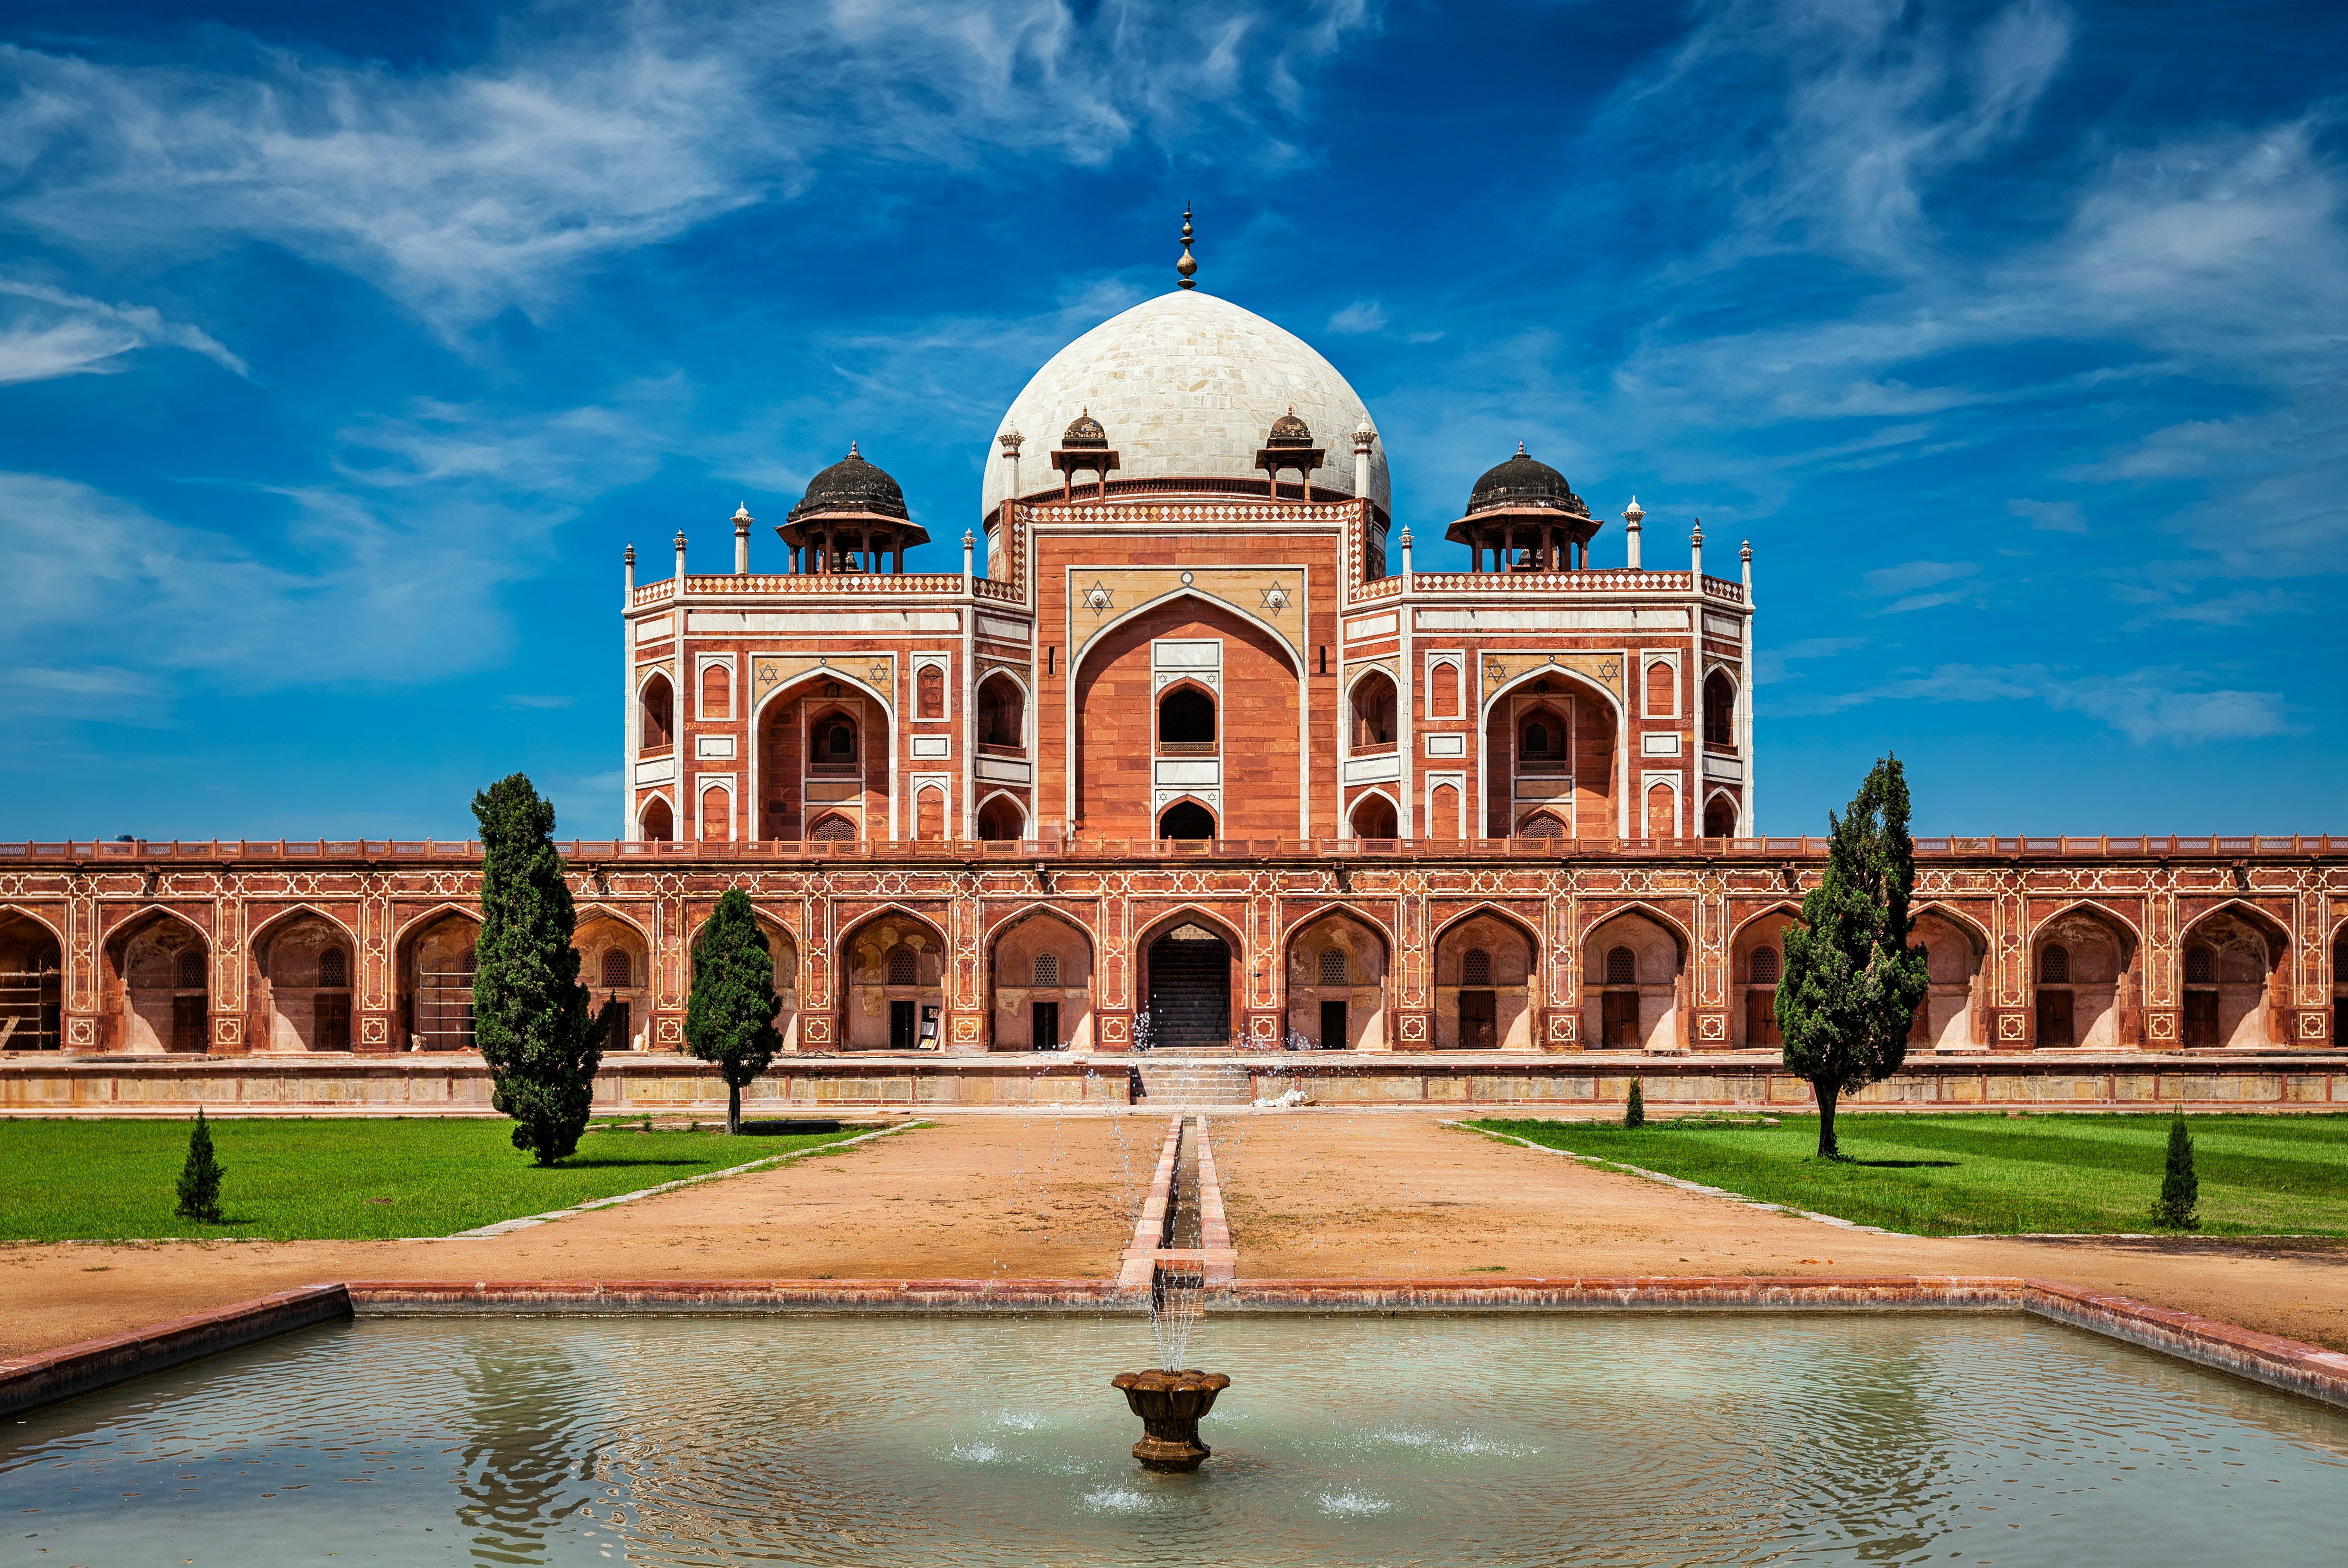 Resa till Delhi - Humayuns mausoleum i Delhi, Indien, en praktfull röd sandsten och marmorstruktur under en klarblå himmel.